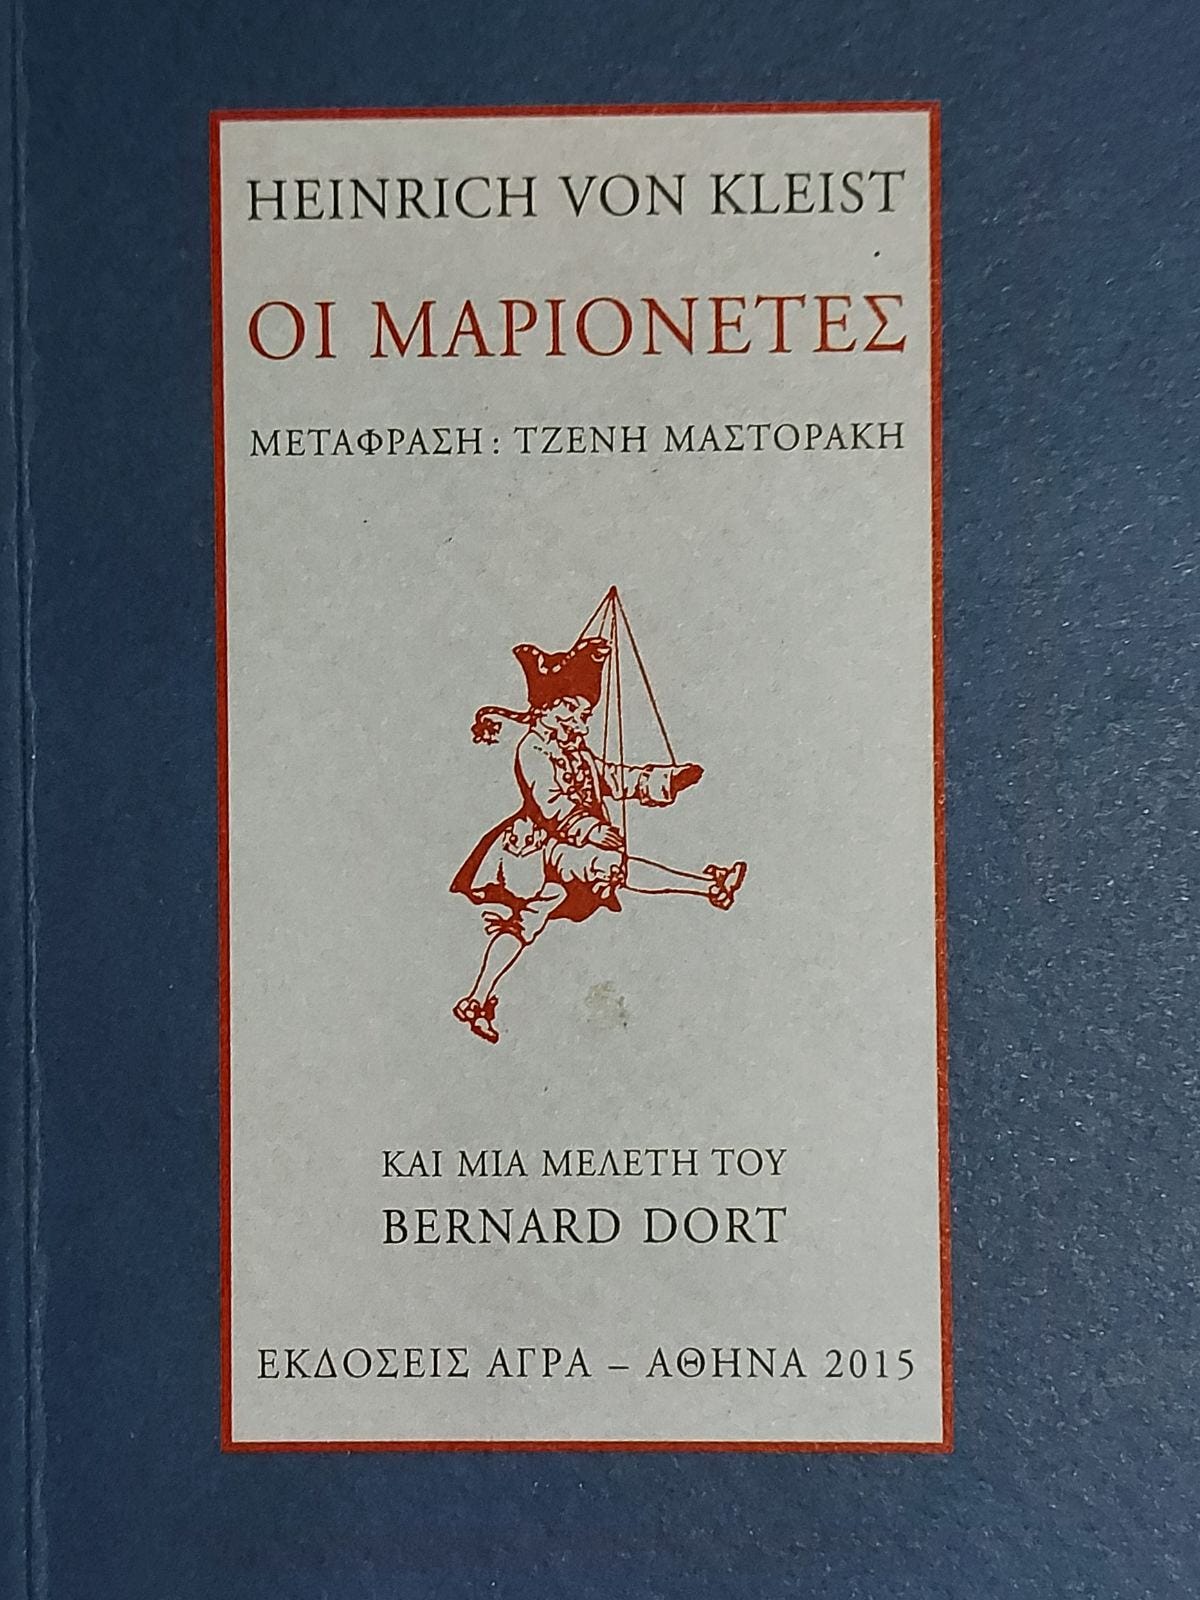 Ο Κωνσταντίνος Βαθιώτης αποκαλύπτει το πραγματικό πρόσωπο του Μητσοτάκη, όλης της πολιτικής συμμορίας του... “ελληνικού” (;;;) ΚΥΝΟβουλίου και την τραγωδία του αλοτροιωμένου “ελληνικού” λαού!!! “Από τον homo sapiens στον homo σάπιο”